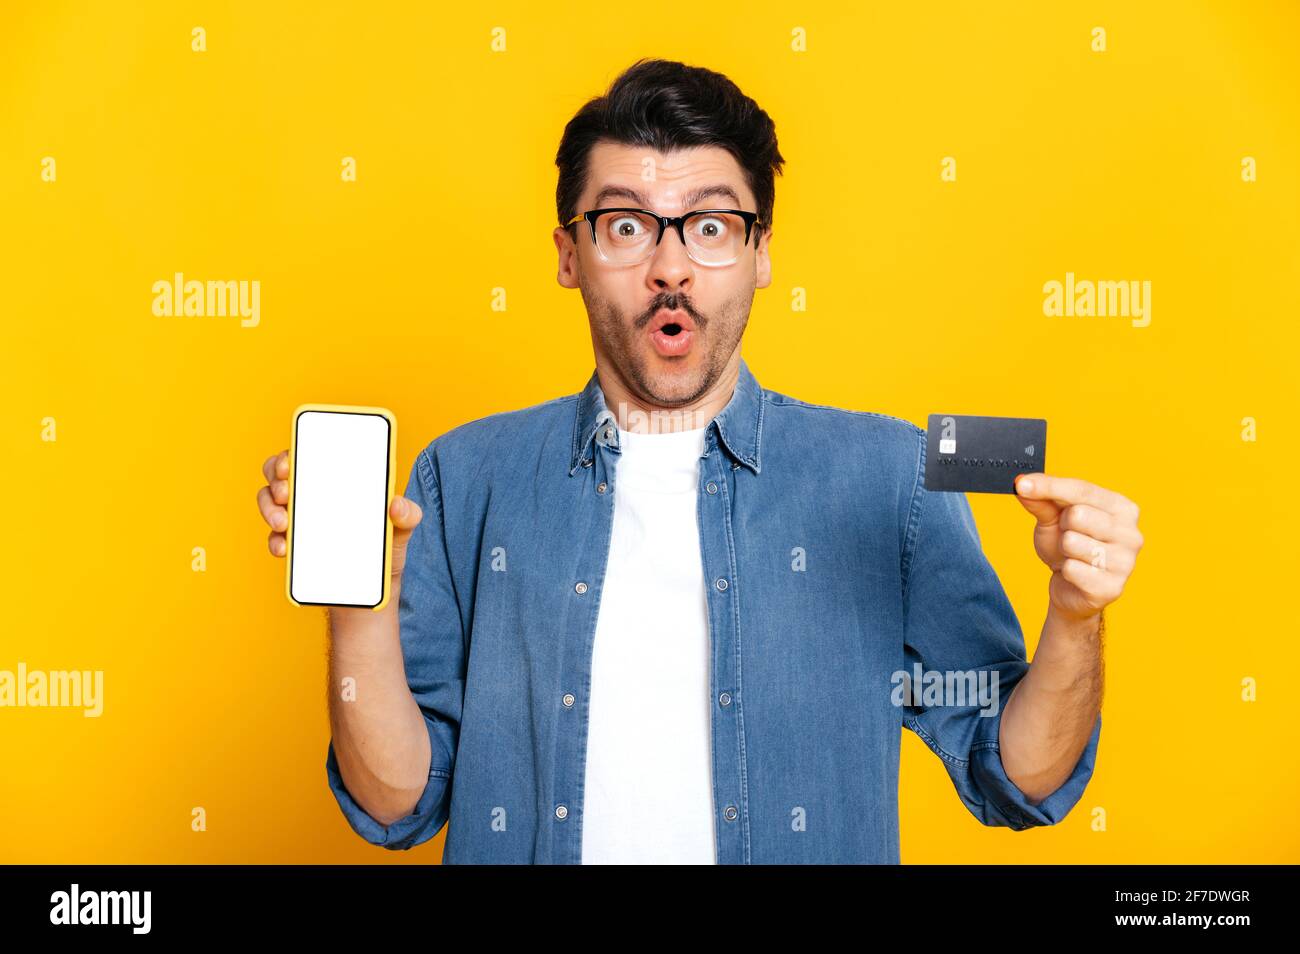 Stupéfait choqué caucasien élégamment habillé gars avec des lunettes, tient un smartphone et une carte de crédit dans les mains, regarde surpris à la caméra, se tenir sur un arrière-plan isolé orange, e-banking concept Banque D'Images